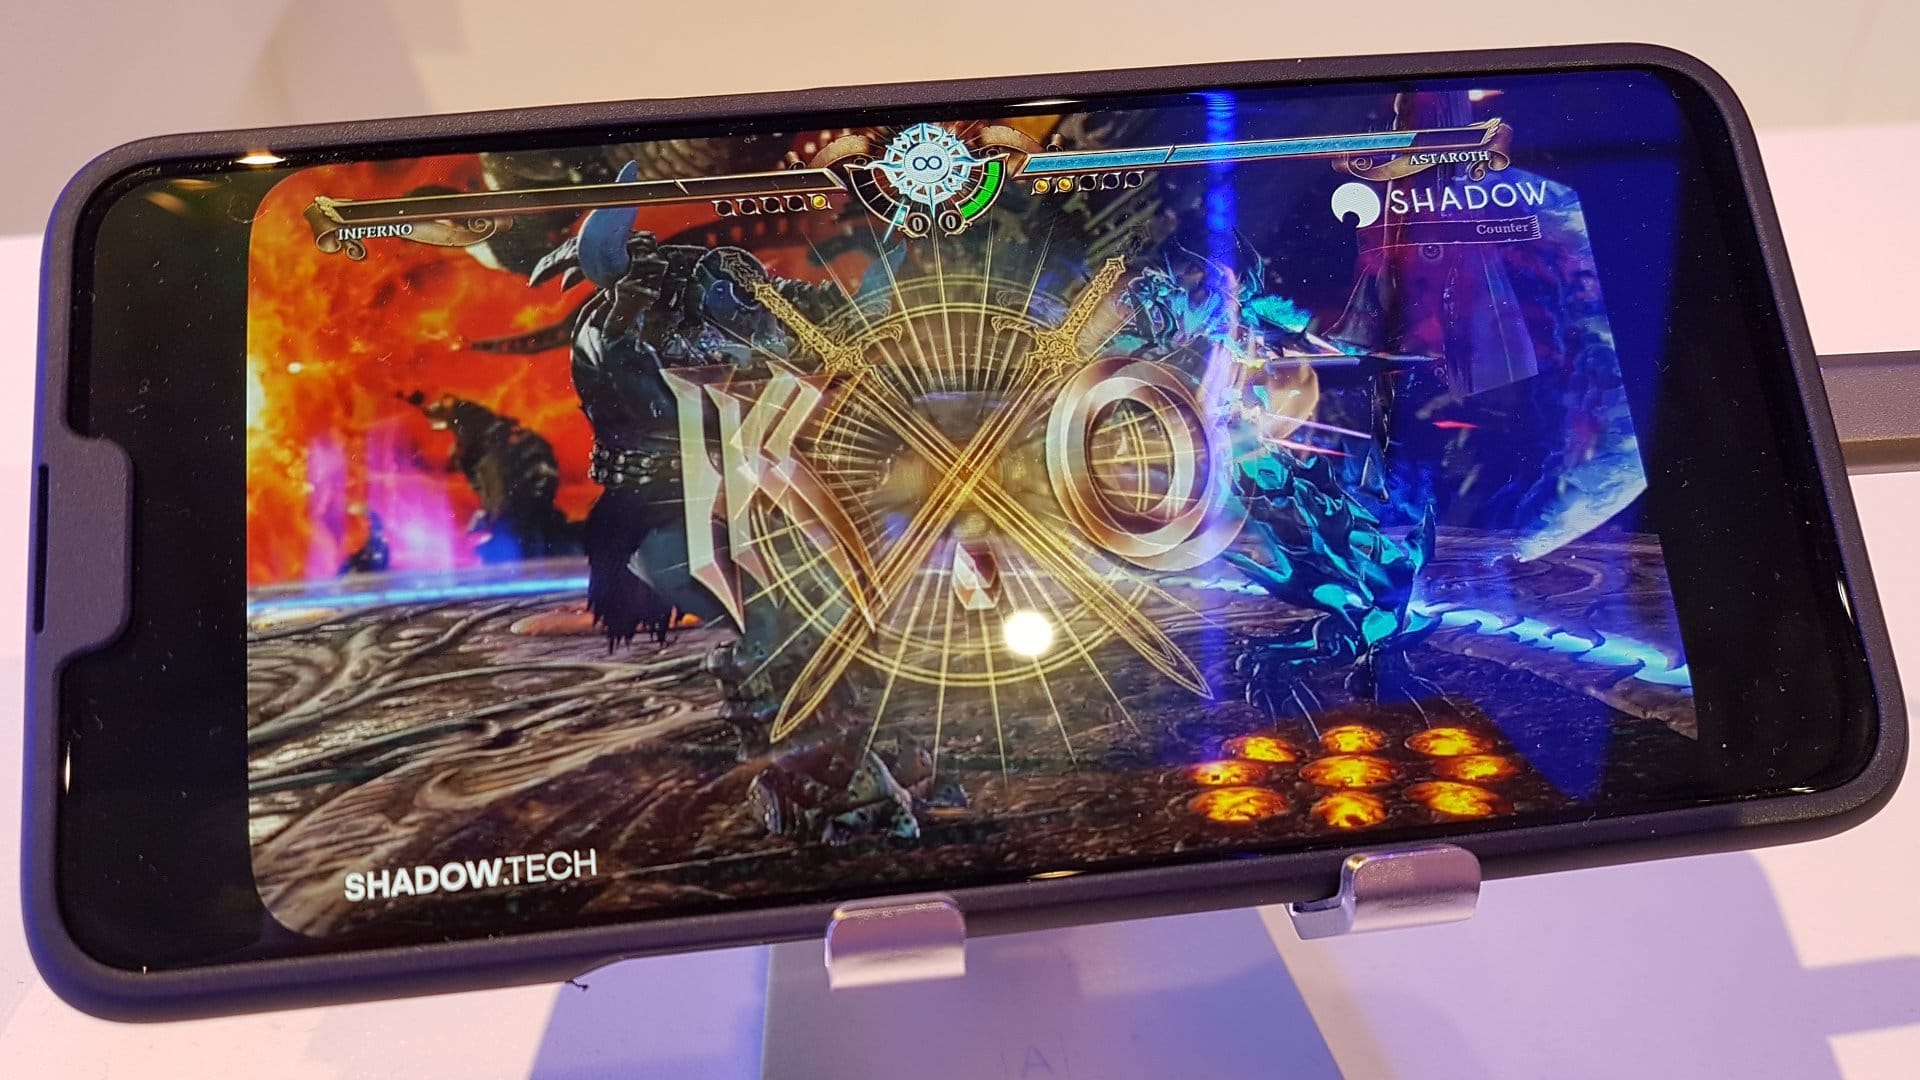 Image 1 : MWC 2019 : démo vidéo du cloud gaming de Shadow via une connexion 5G